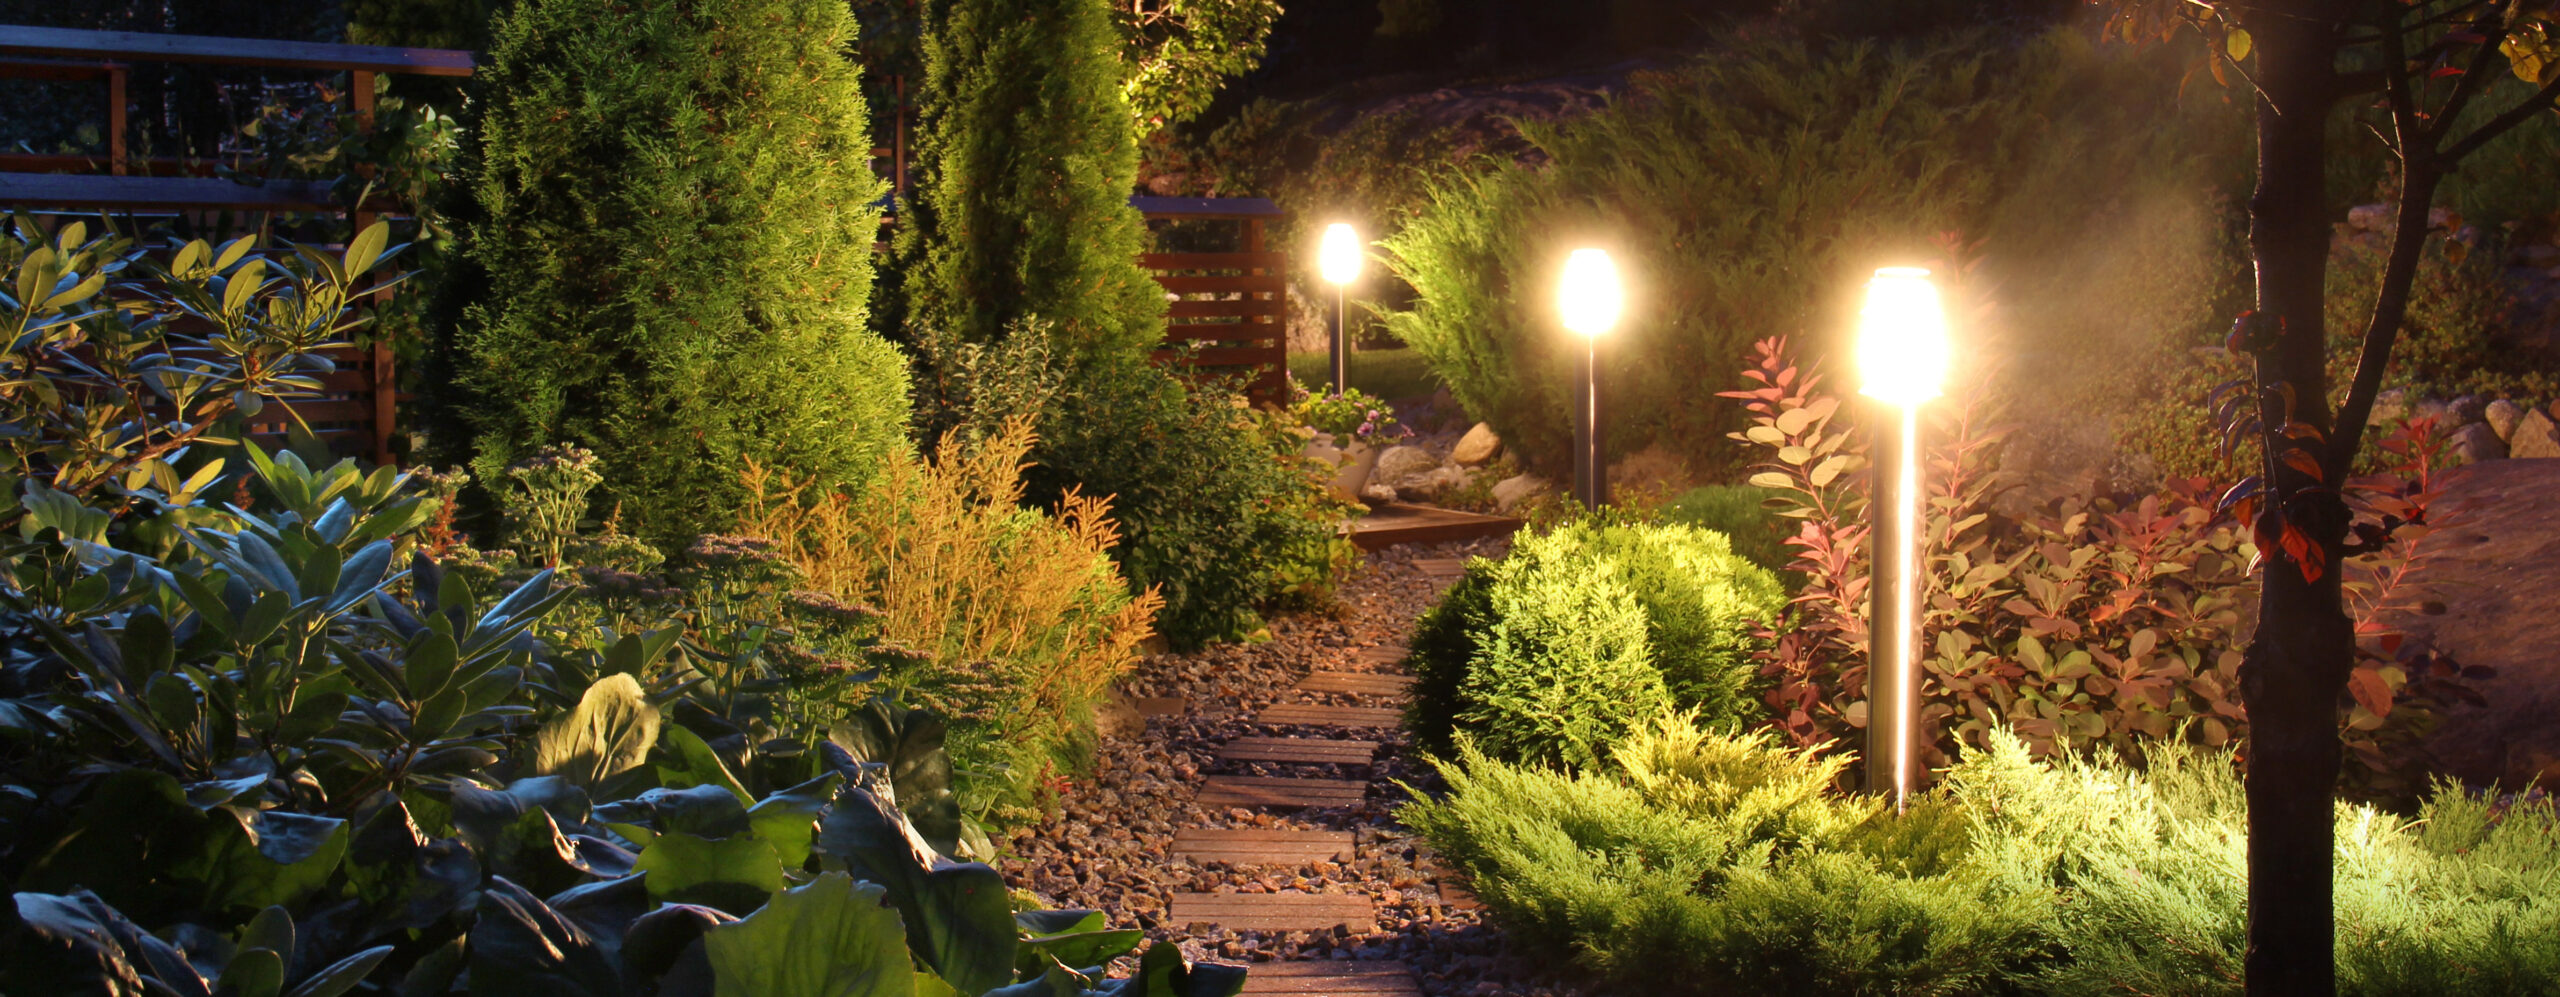 outdoor landscape pathway lighting